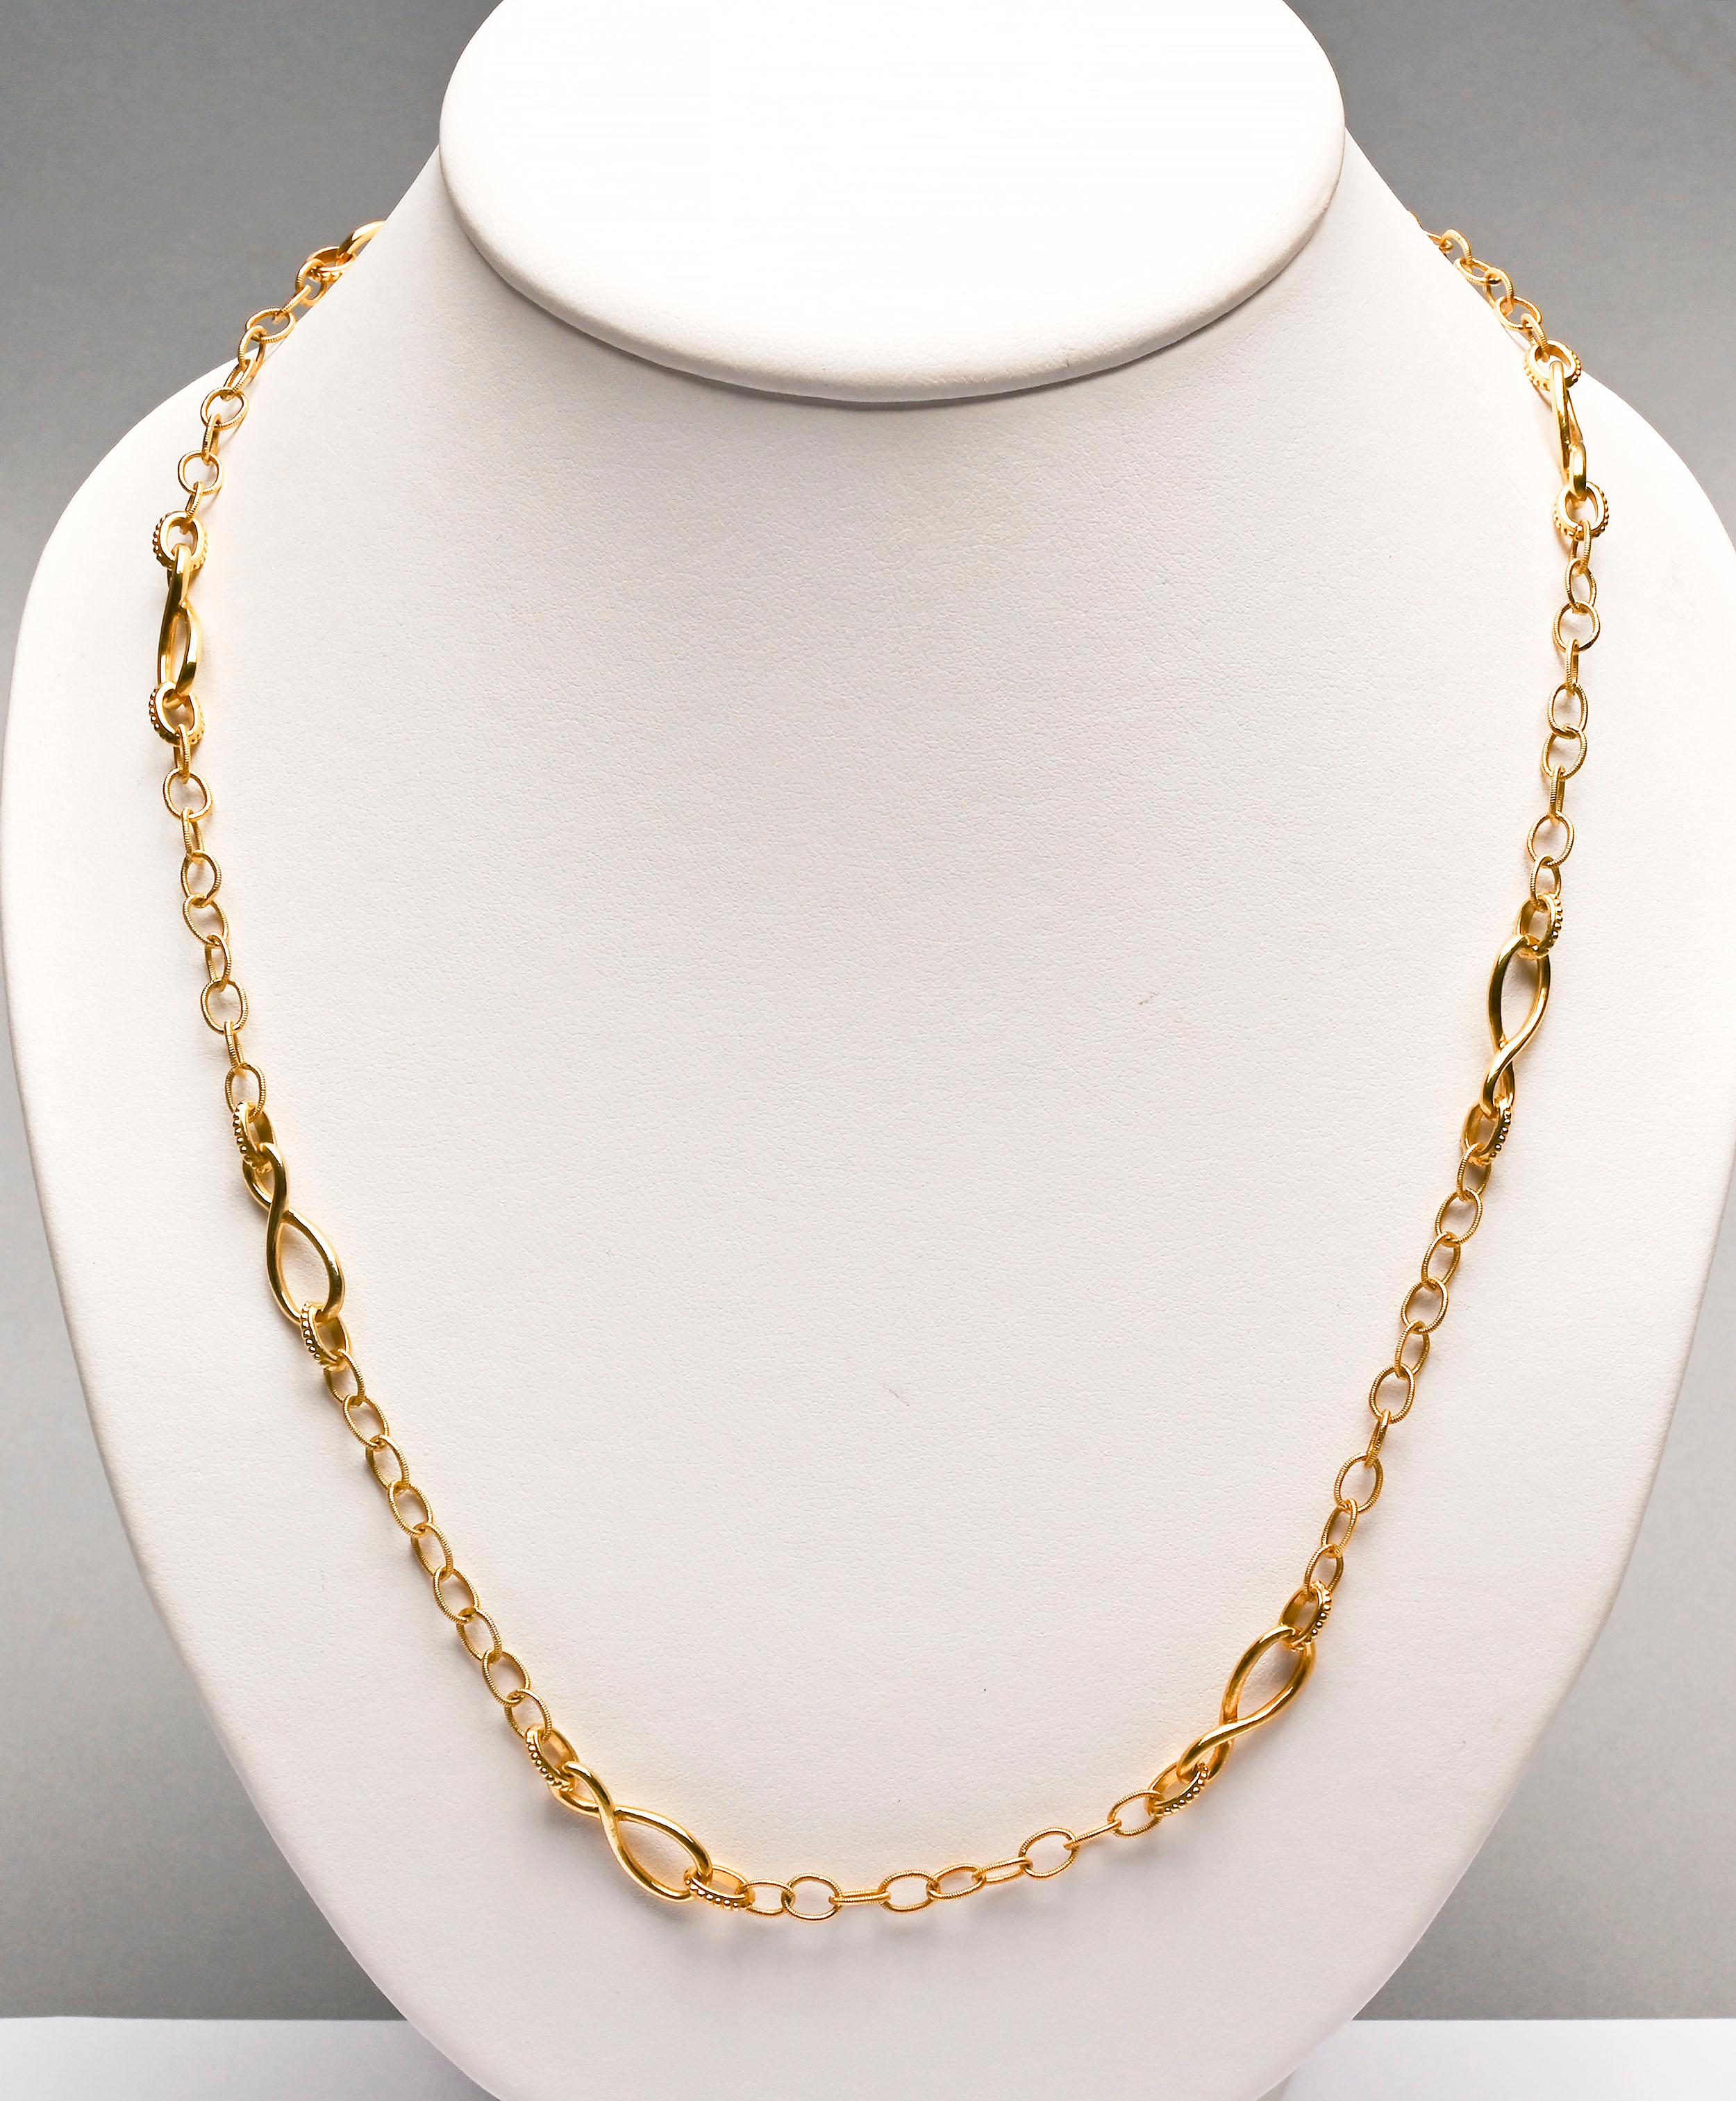 Ce long collier en or 18 carats est composé de trois maillons différents. Le plus grand est un huit qui mesure 1/4